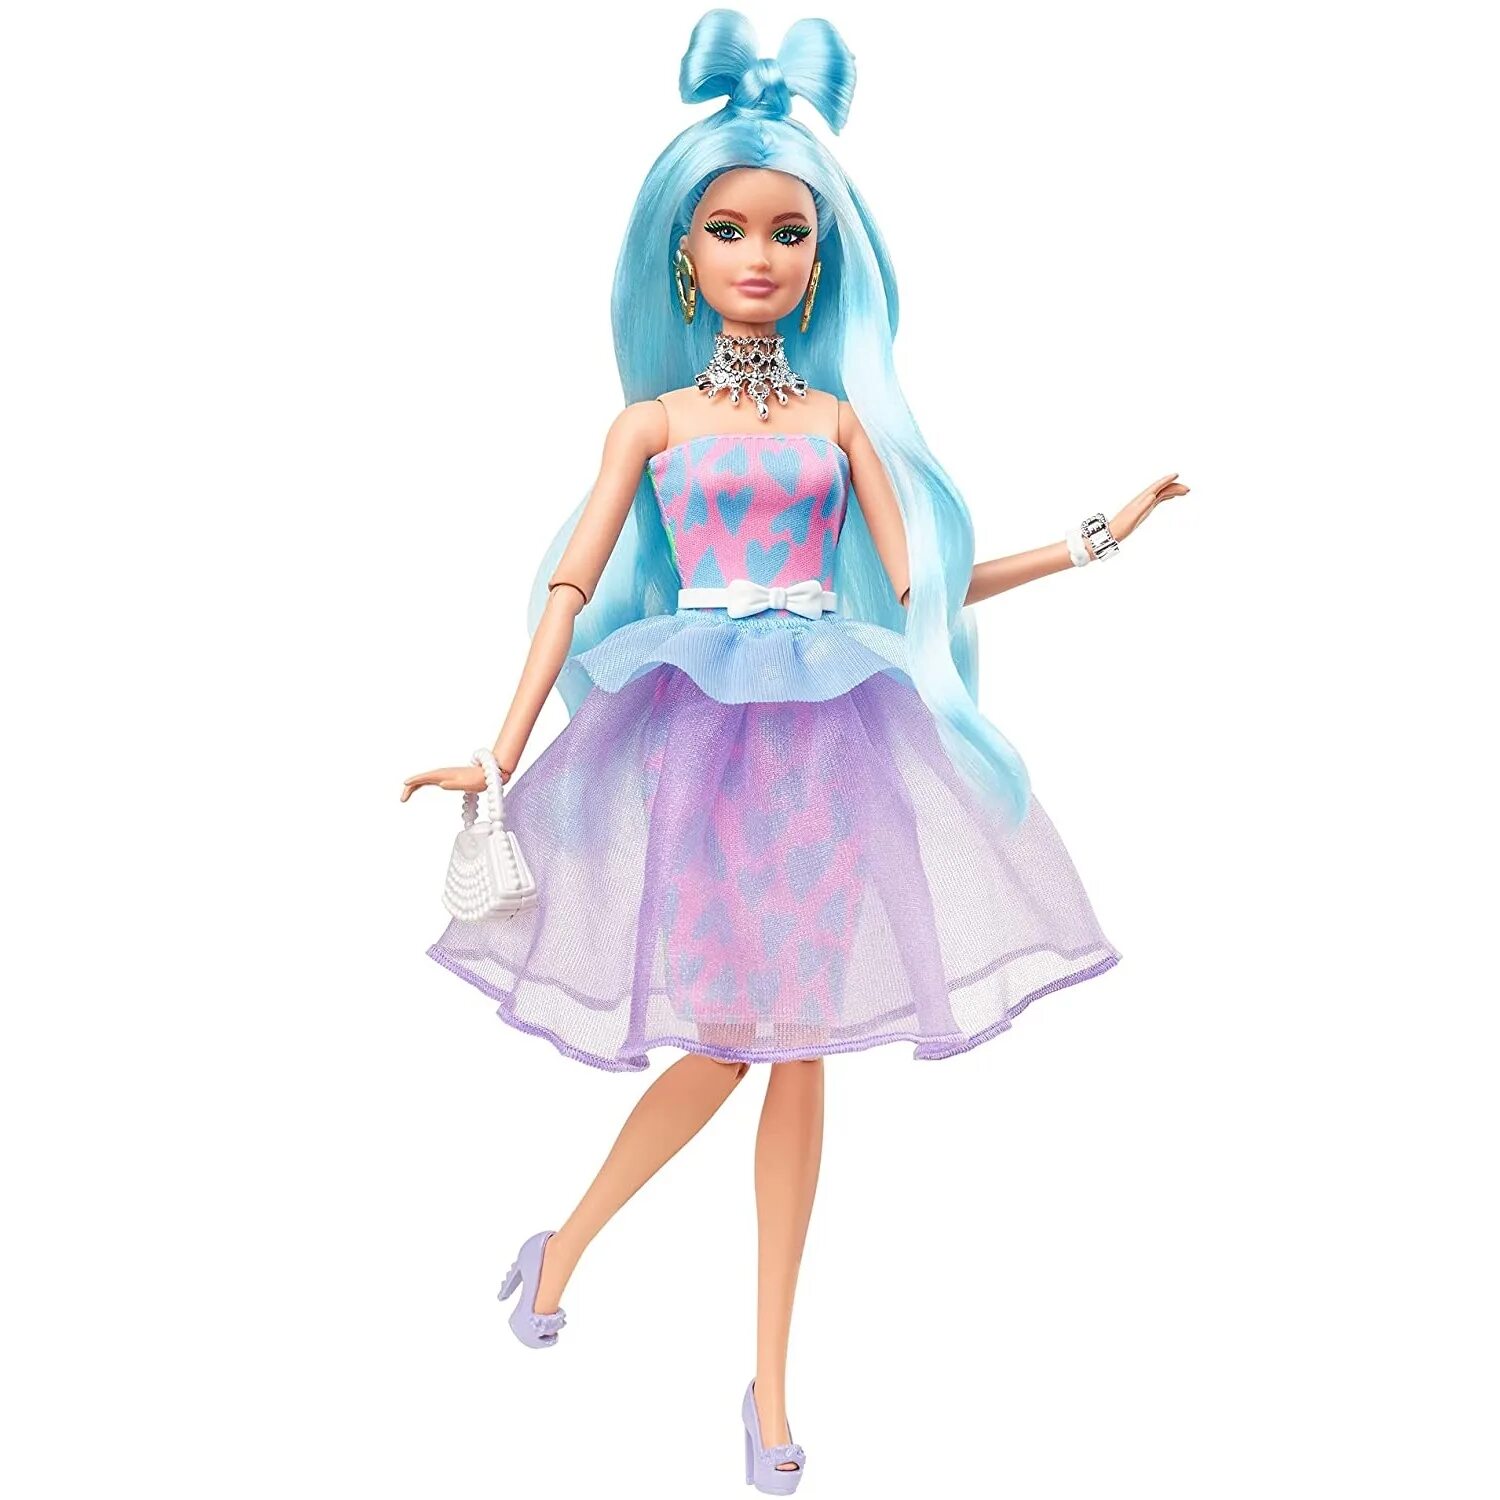 Кукла Barbie Экстра, gyj69. Куклы Барби Экстра 2021. Barbie Экстра со светло-голубыми волосами gyj69. Кукла Барби Экстра с голубыми волосами.